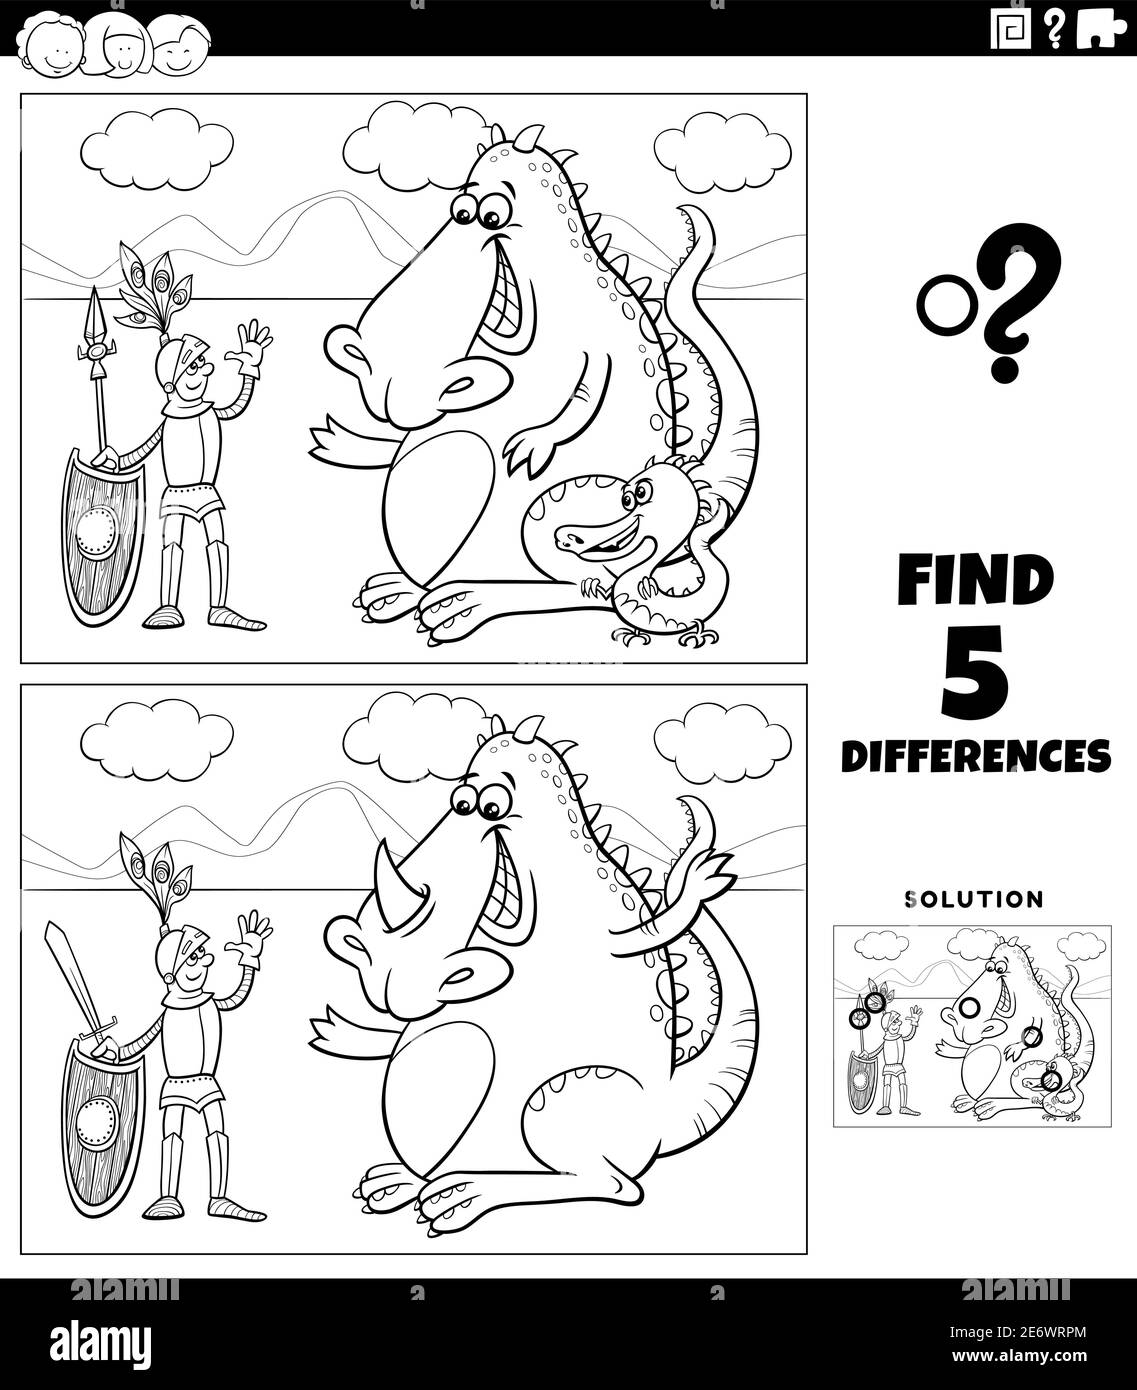 Illustration de dessin animé noir et blanc de la recherche des différences entre images jeu éducatif avec chevalier et personnages de dragon fantaisie de coloration b Illustration de Vecteur